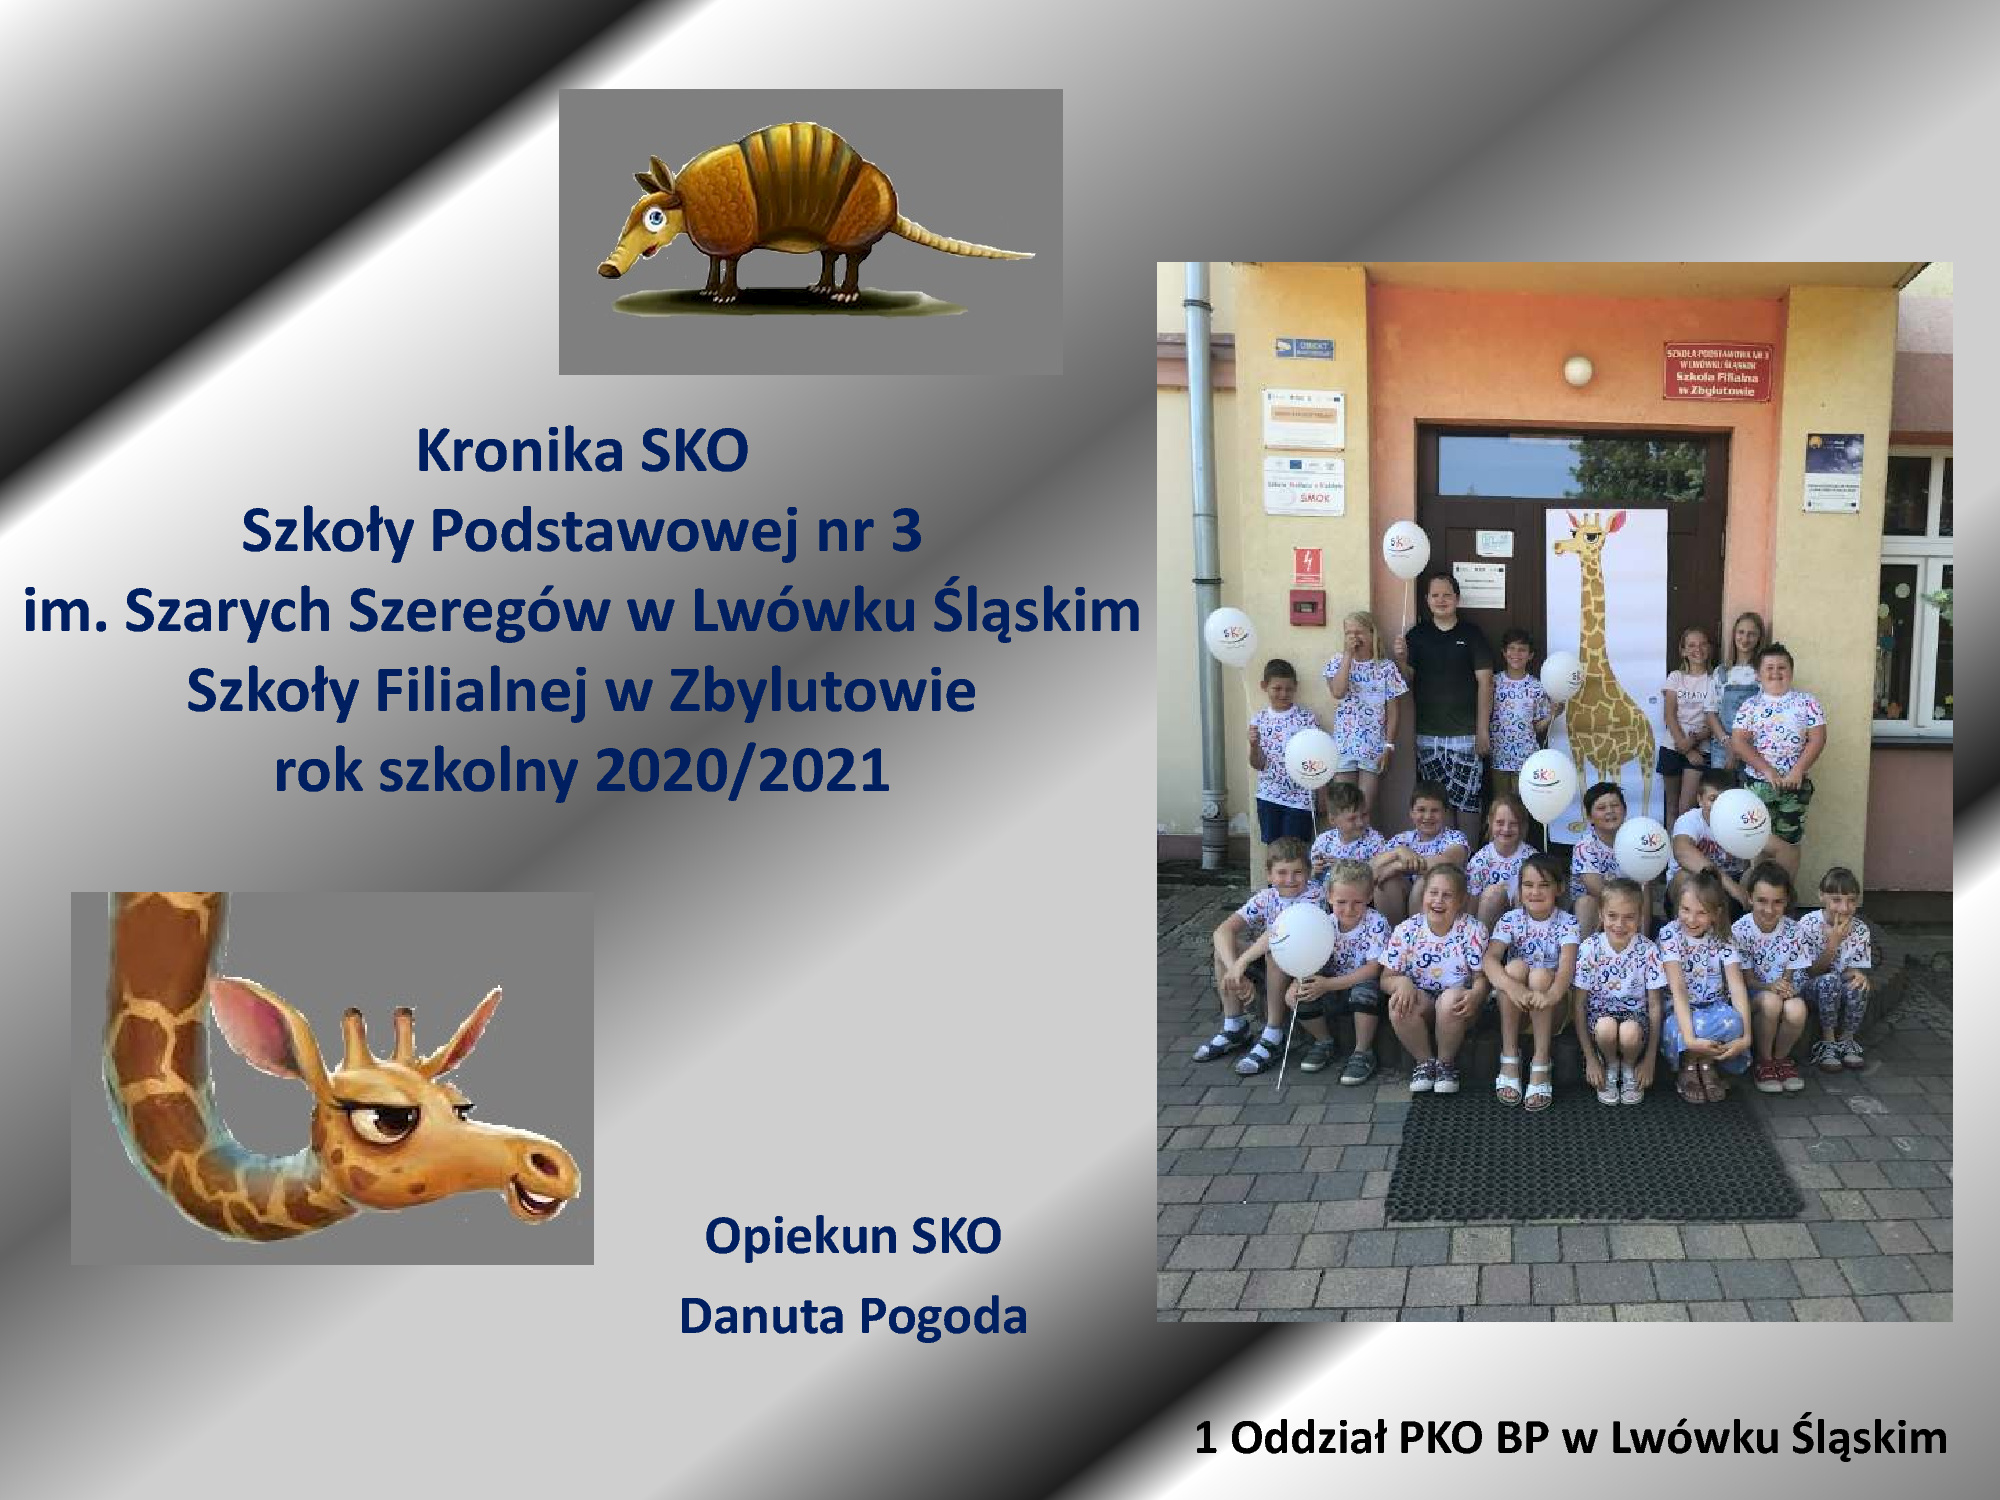 Szkoła Podstawowa nr 3 im. Szarych Szeregów w Lwówku Śląskim, Szkoła Filialna w Zbylutowie